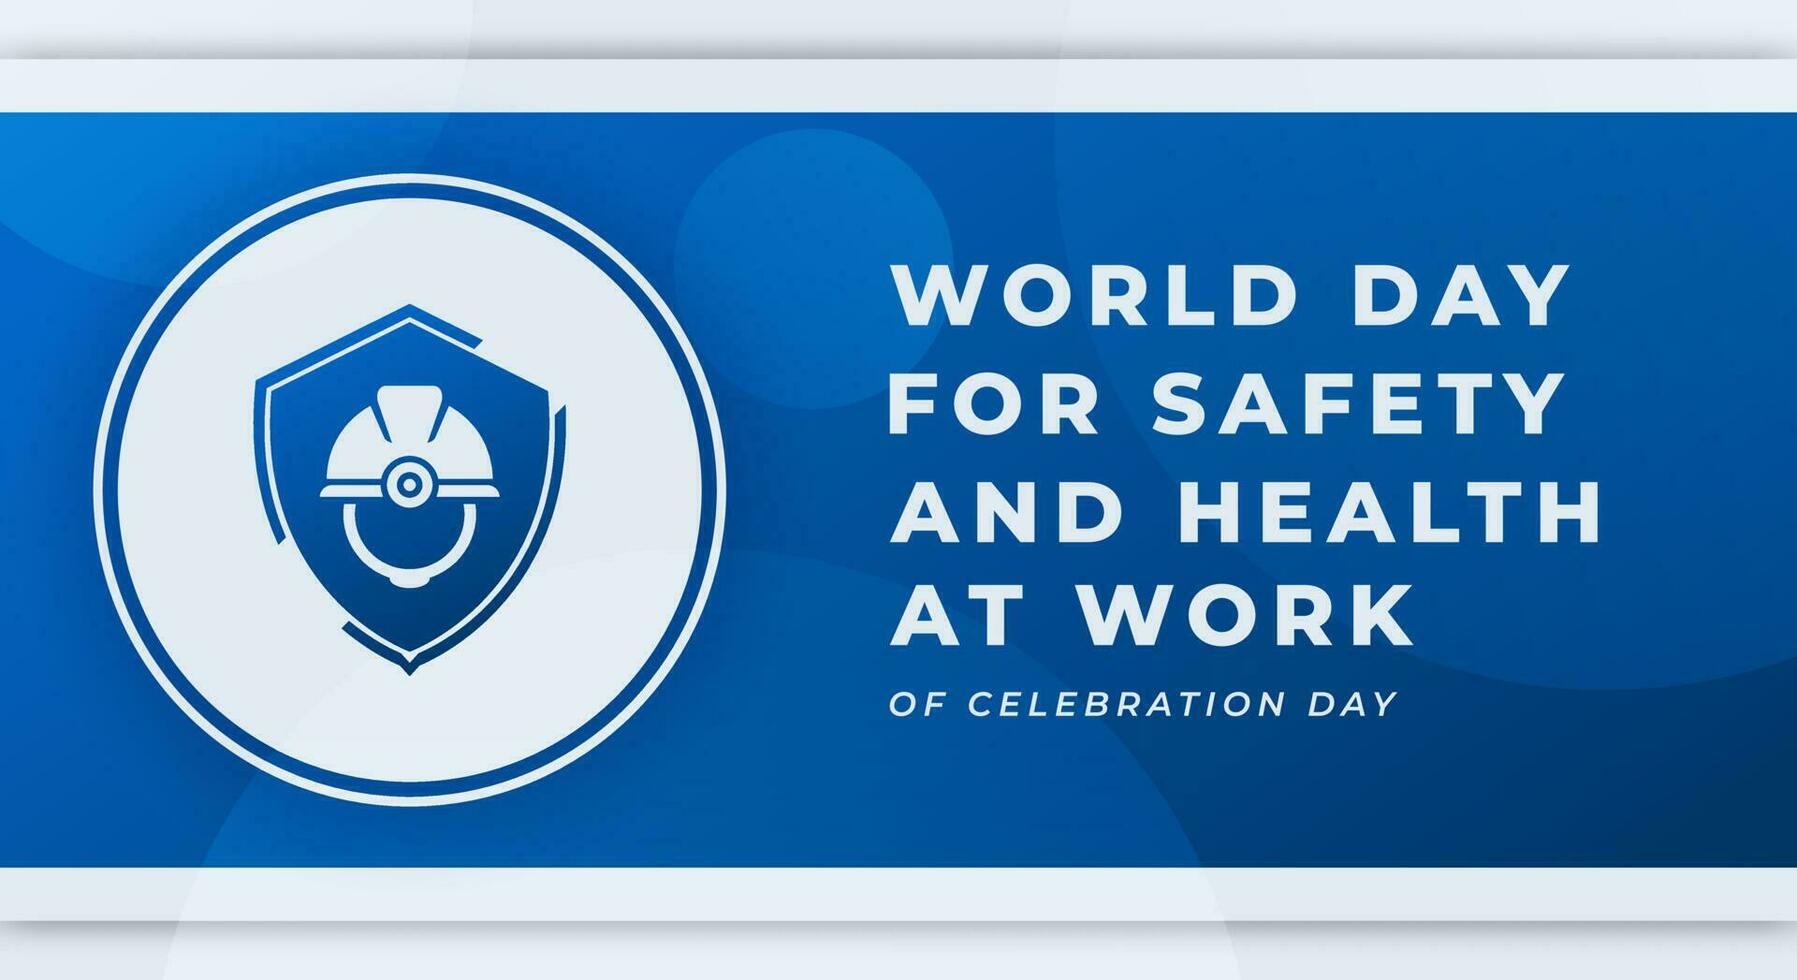 Welt Tag zum Sicherheit und Gesundheit beim Arbeit Feier Vektor Design Illustration zum Hintergrund, Poster, Banner, Werbung, Gruß Karte